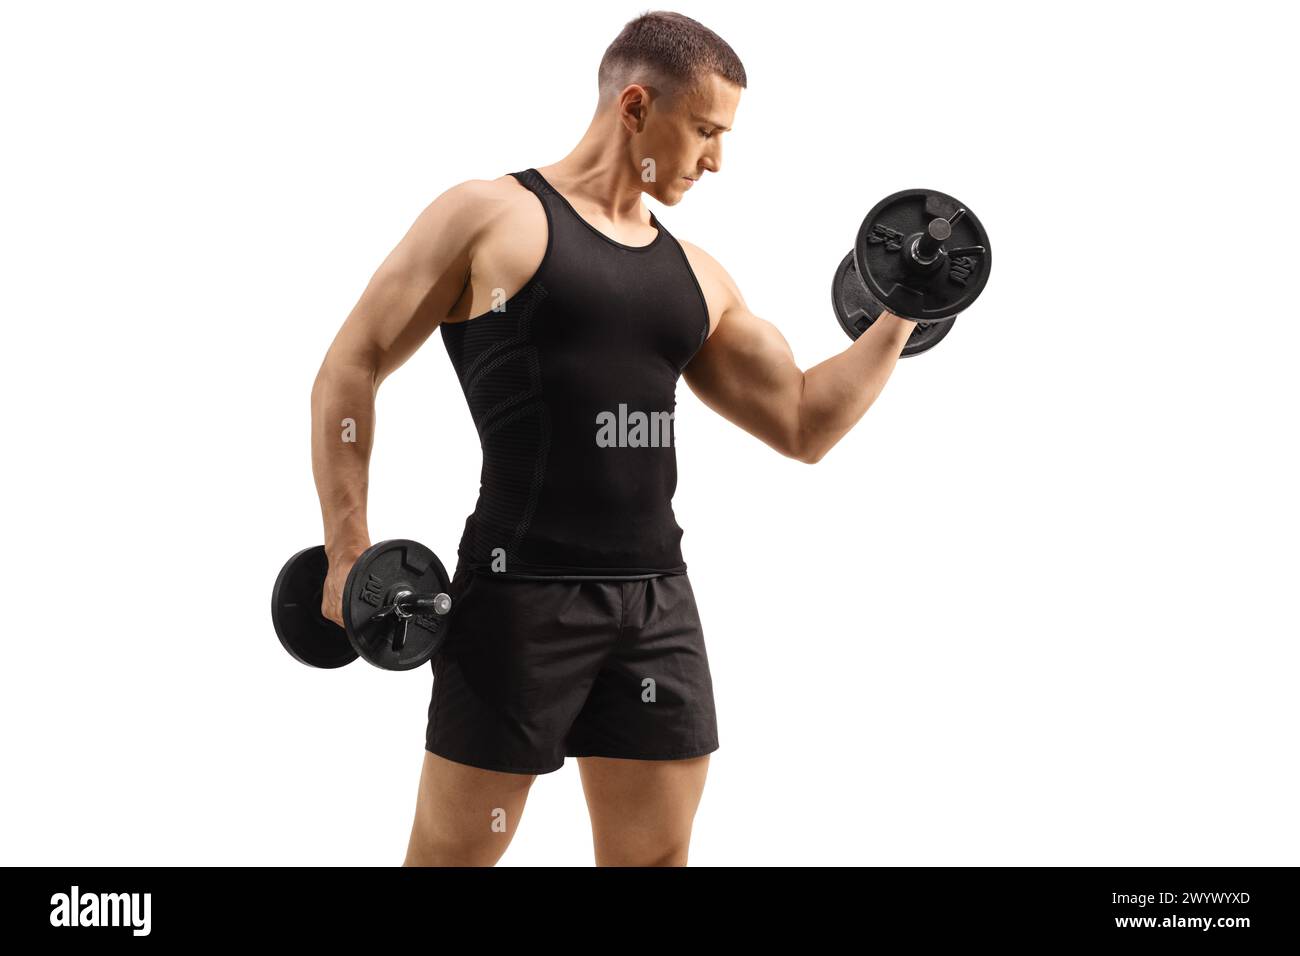 Uomo che pratica allenamento con pesi con un manubrio isolato su sfondo bianco, concetto di sport e fitness Foto Stock